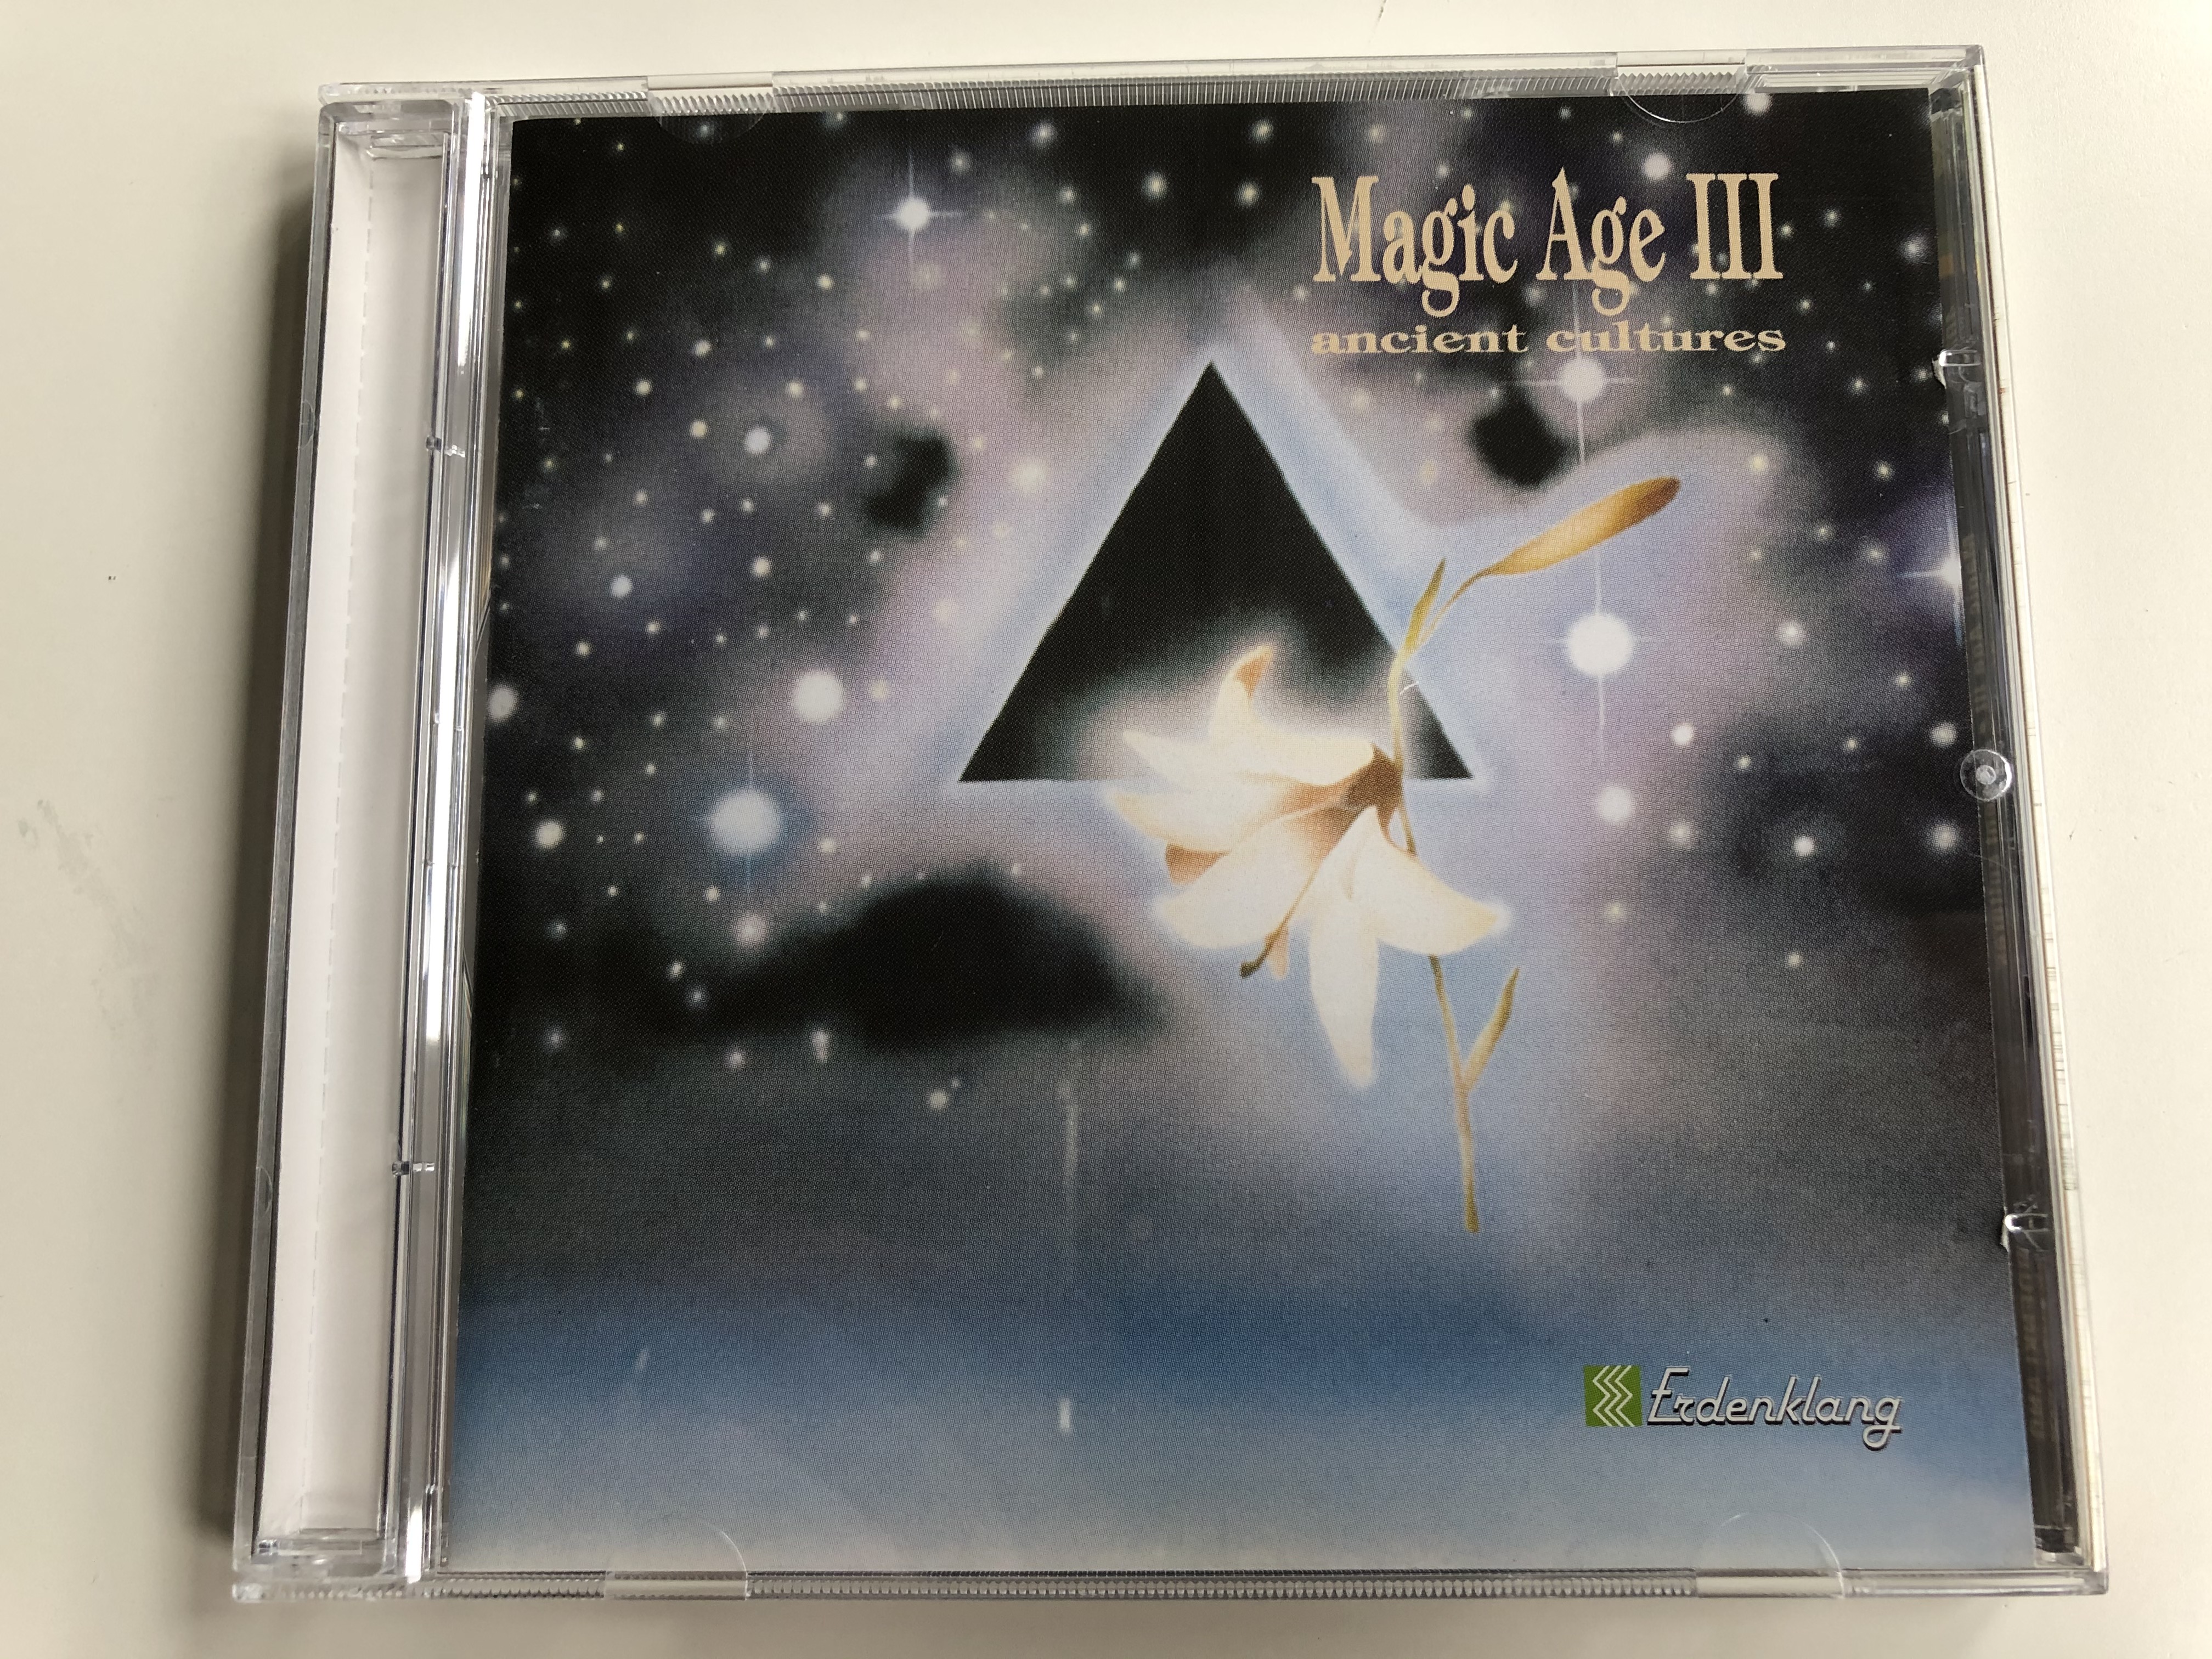 magic-age-iii-ancient-cultures-erdenklang-audio-cd-1994-40722-1-.jpg